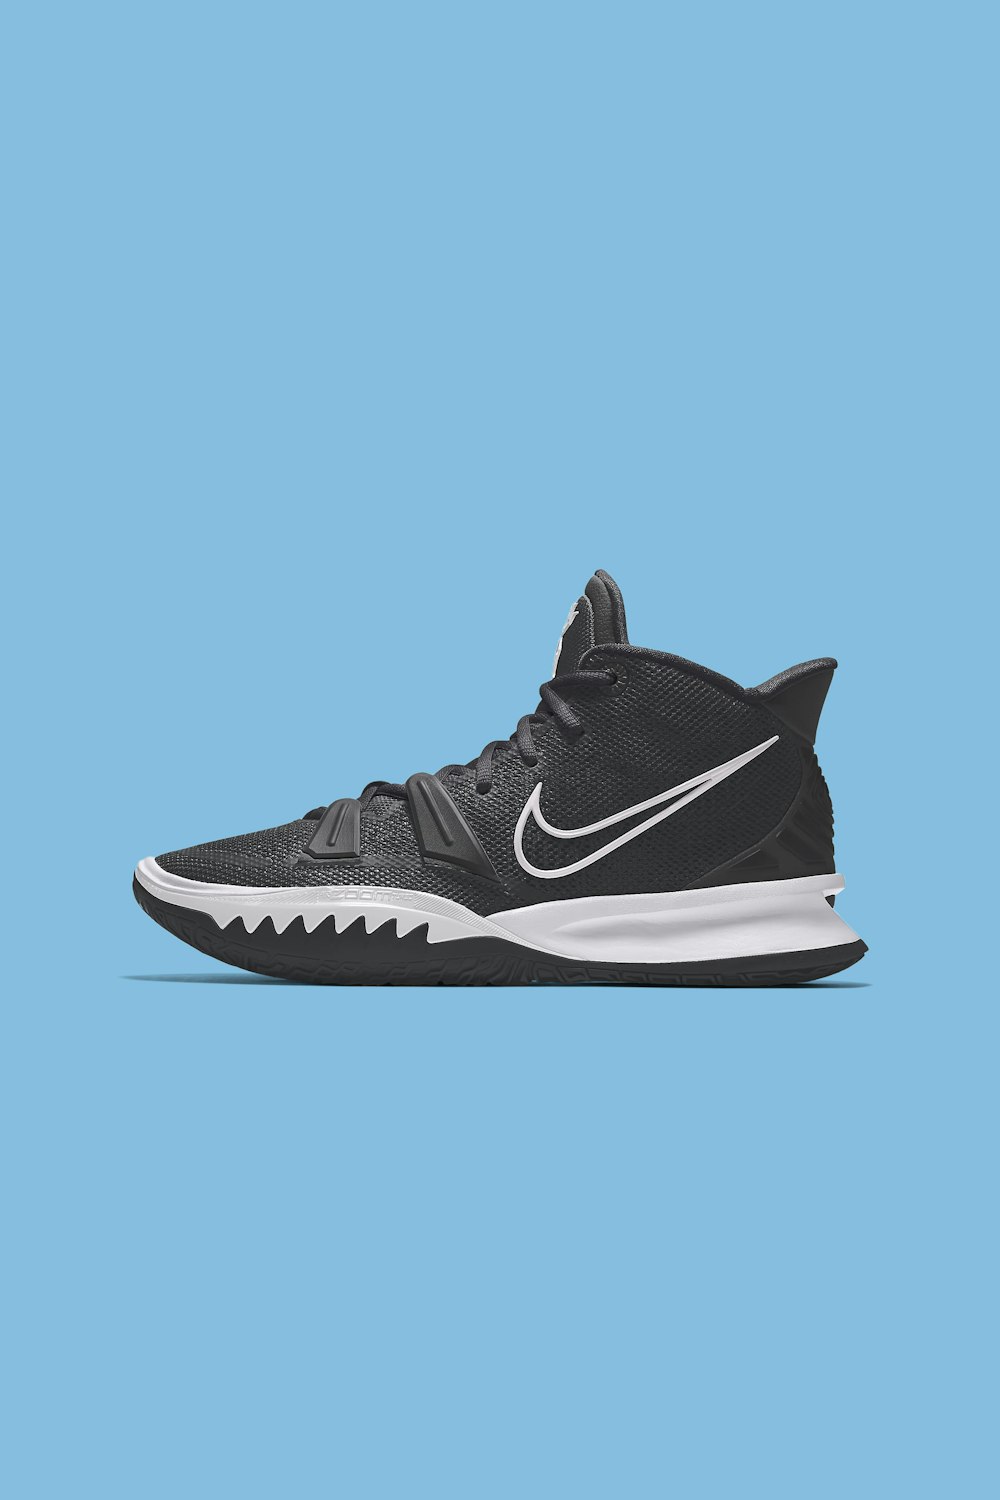 Más 20 fotos de zapatos Nike | Descargar imágenes y de archivo Unsplash